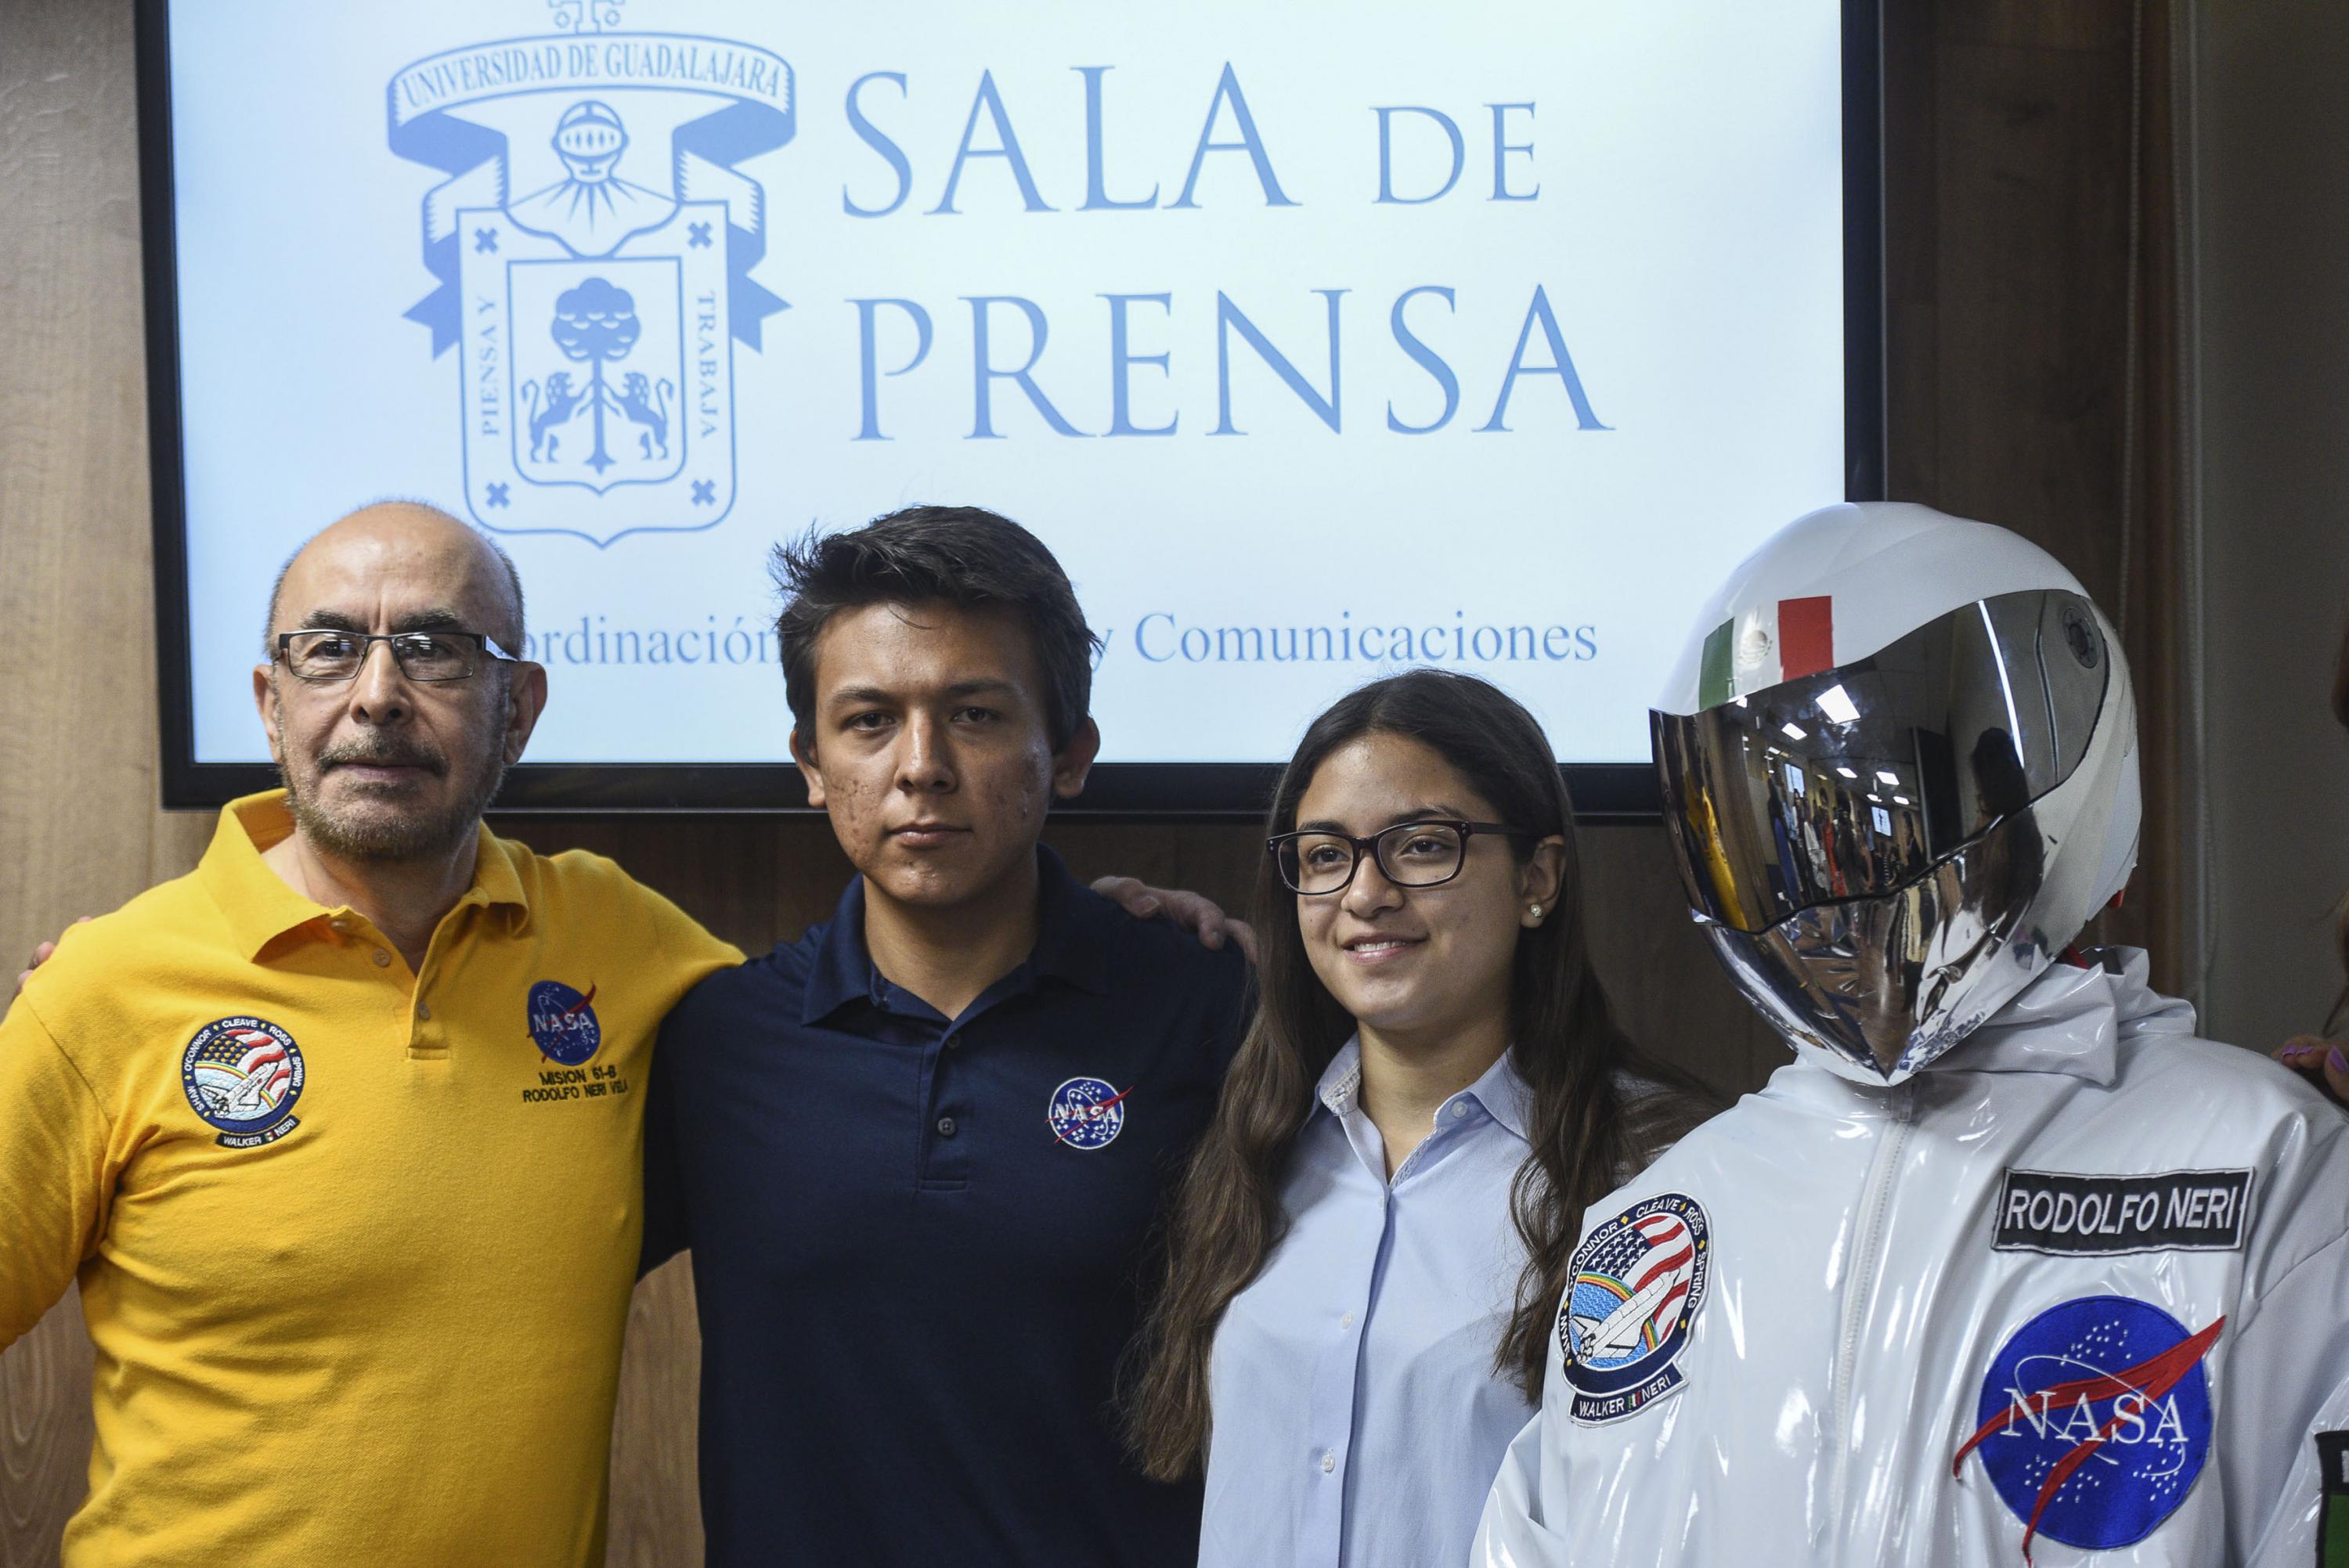 El doctor Neri Vela, dos estudiantes y el astronauta posan para una fotografia al termino de la rueda de prensa